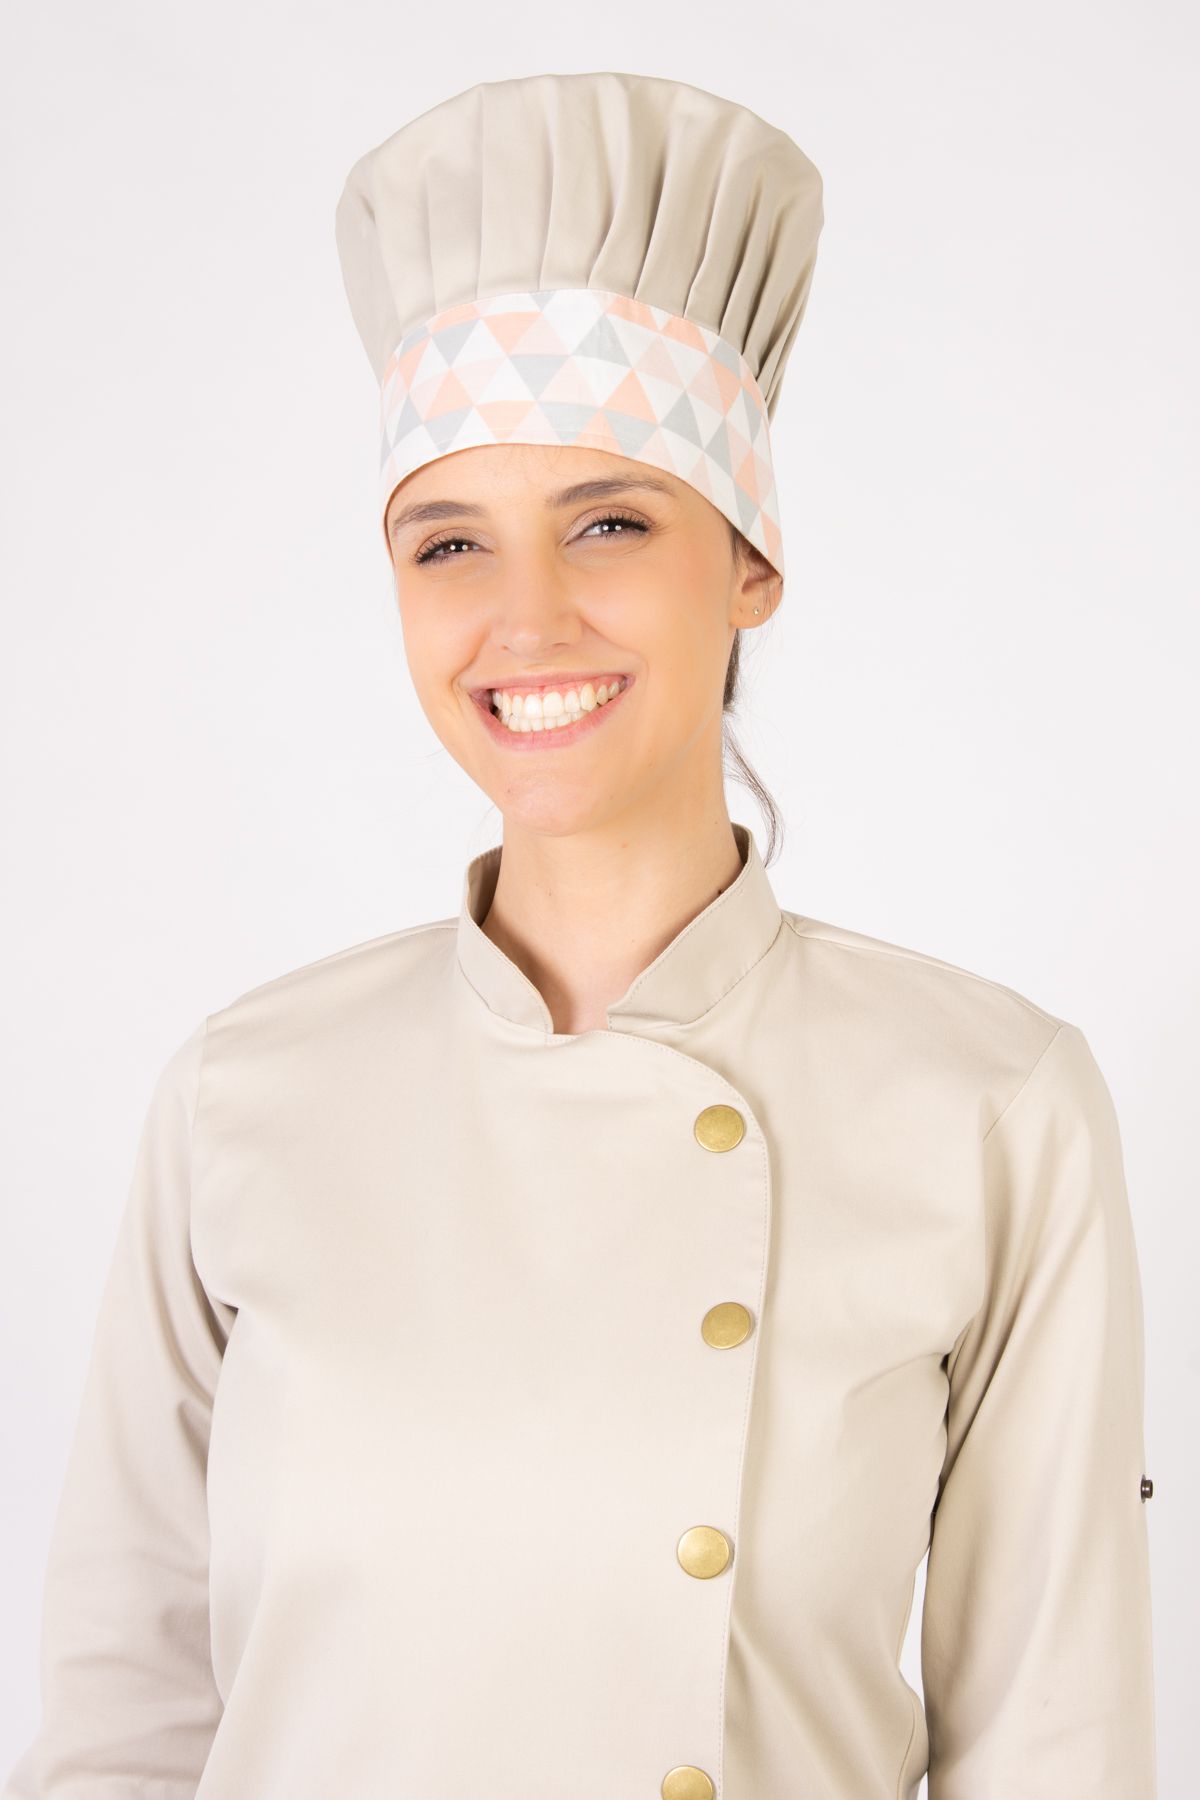 Mestre Cuca Feminino Sumaia Yasmin, Para Profissionais da Cozinha -  Bege + Zigue-Zague Grande